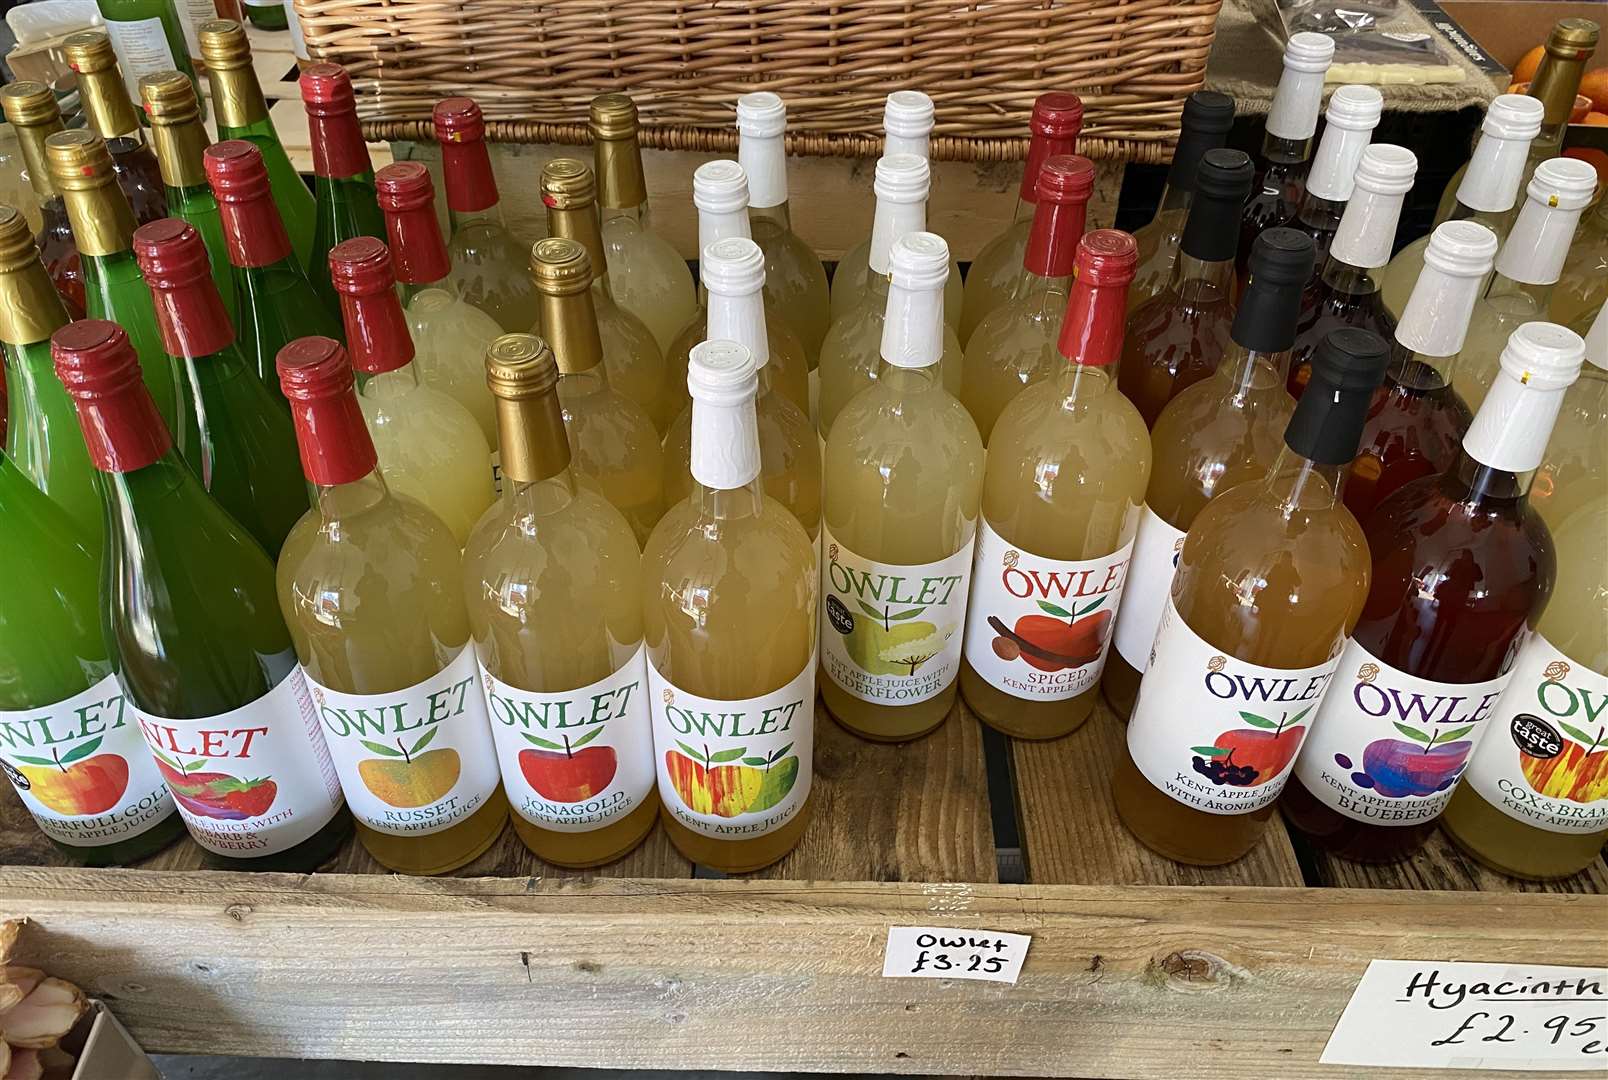 Loddington Farm grows and sells their own fresh apple juice, called Owlets